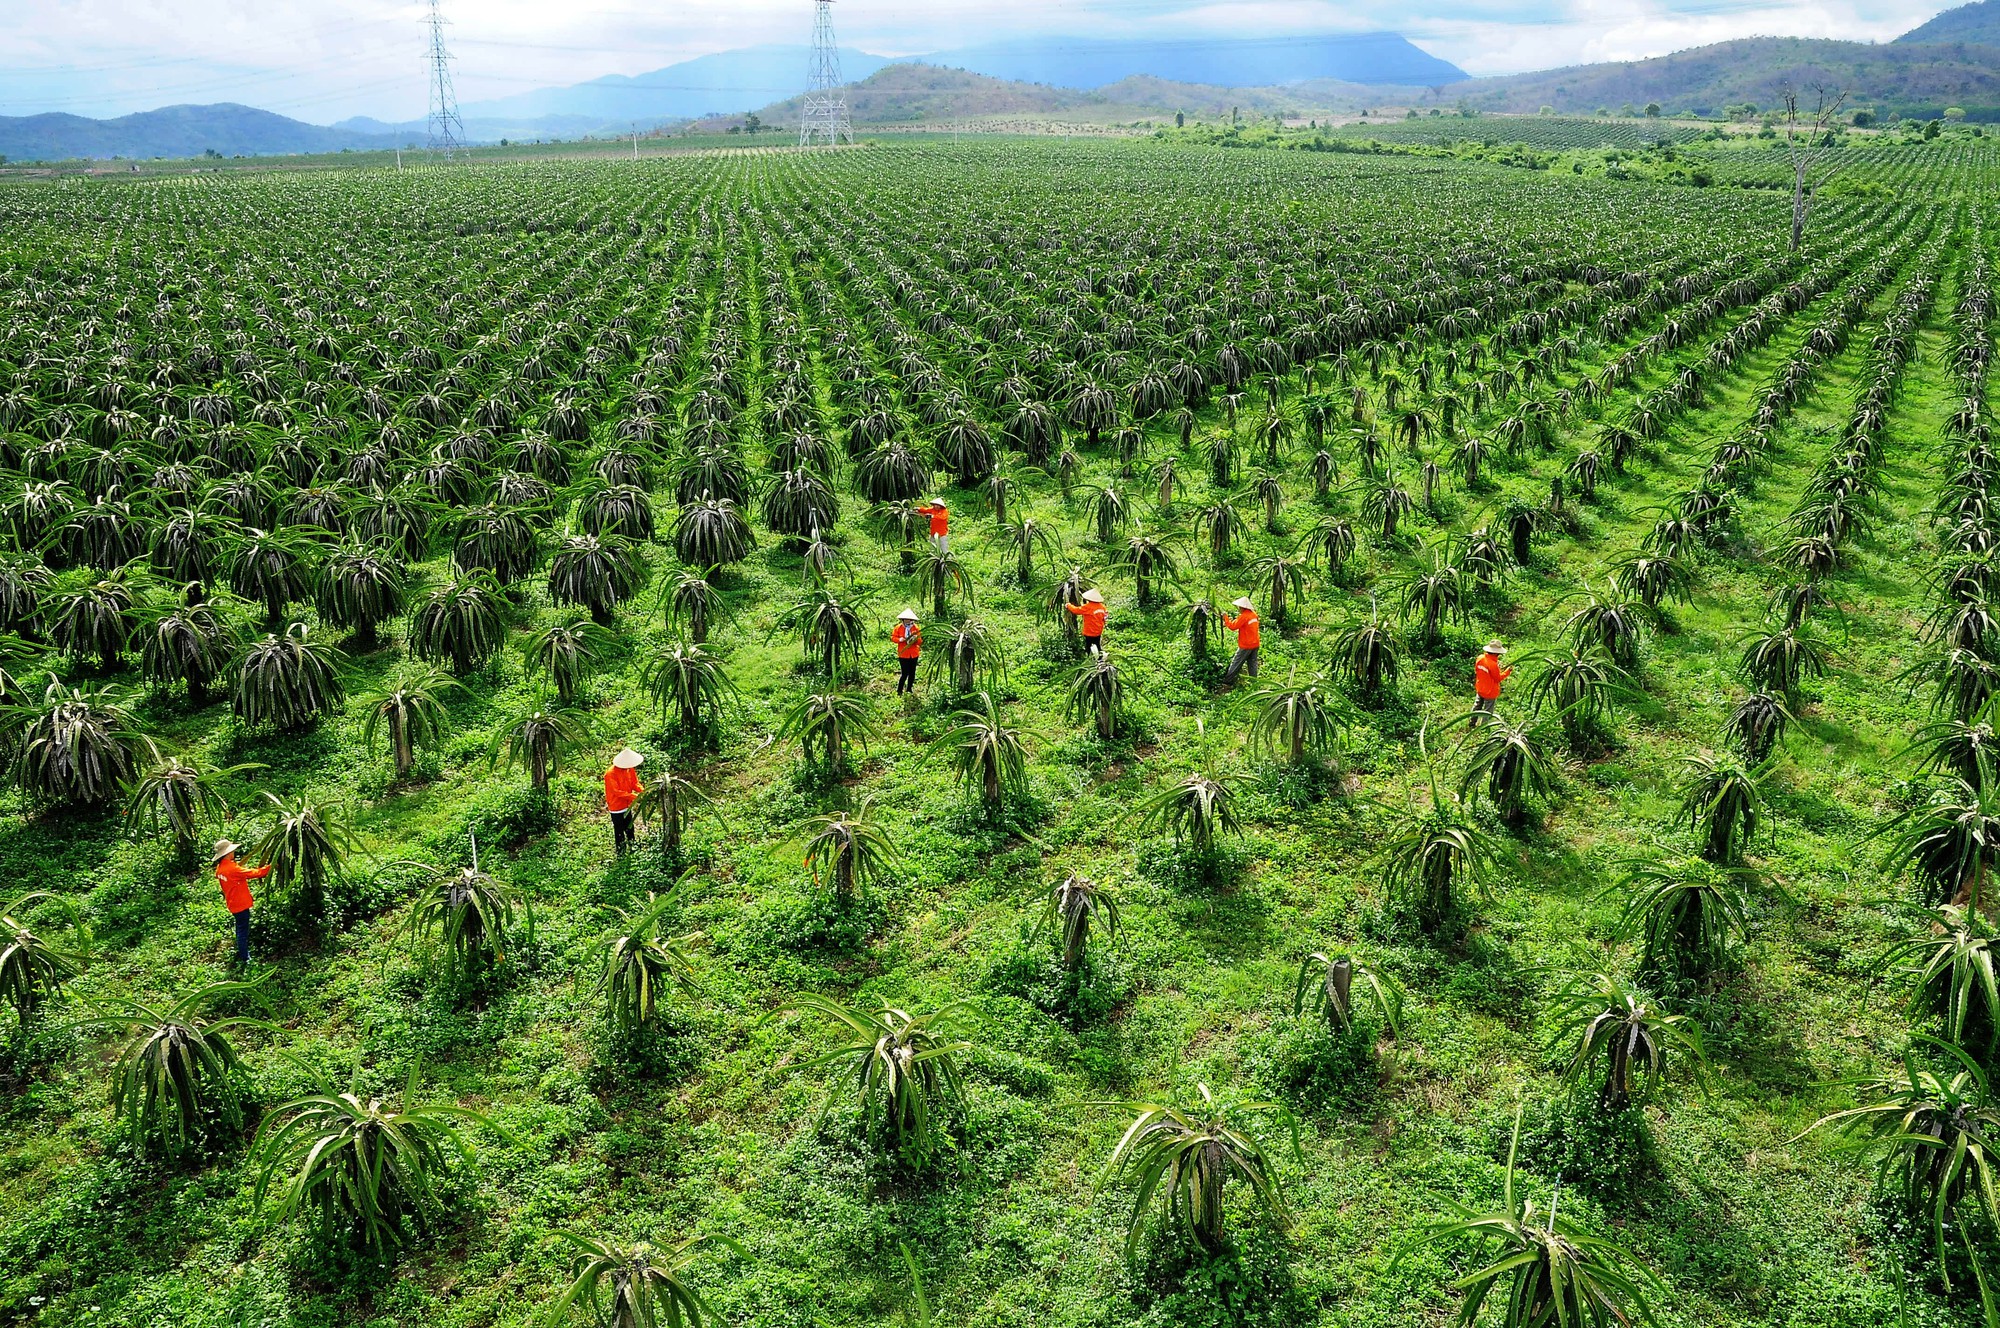 Bình Thuận: Phát triển ngành nông nghiệp hiện đại, bền vững, có giá trị gia tăng cao - Ảnh 4.